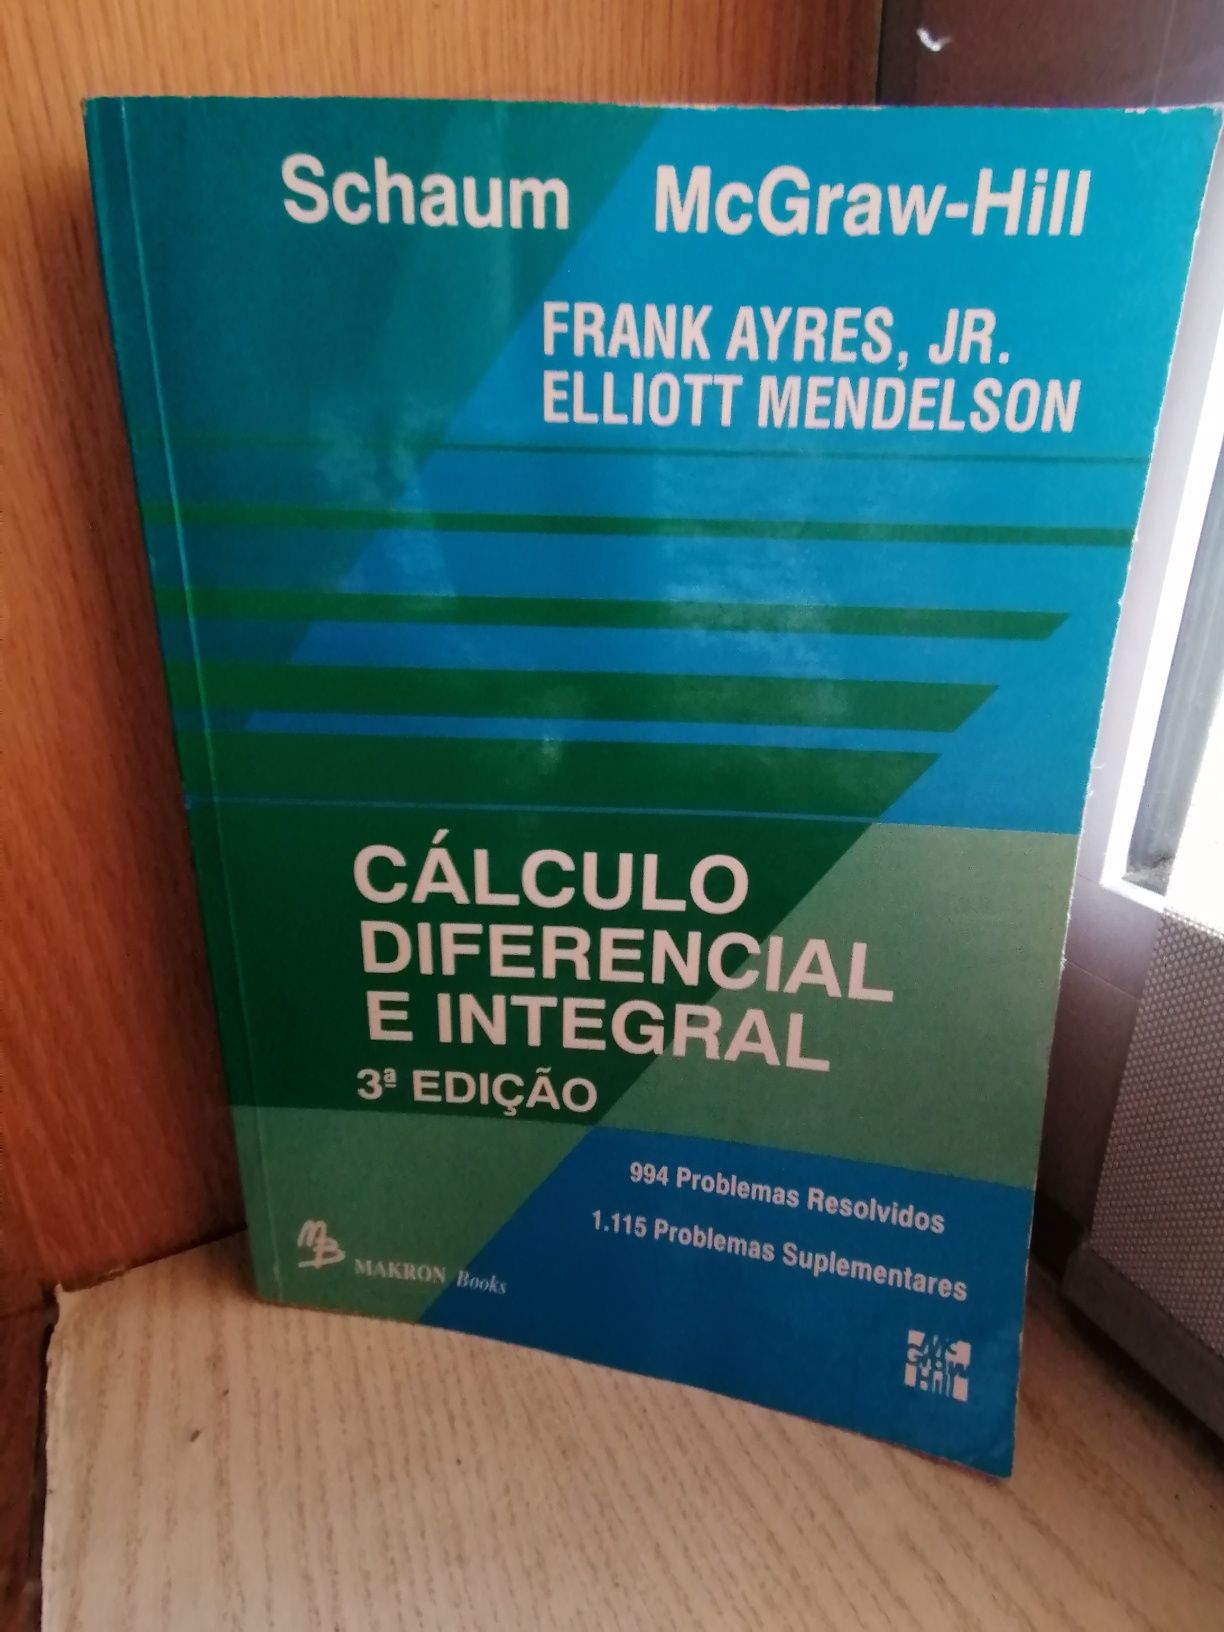 LIVRO "Cálculo diferencial e integral"